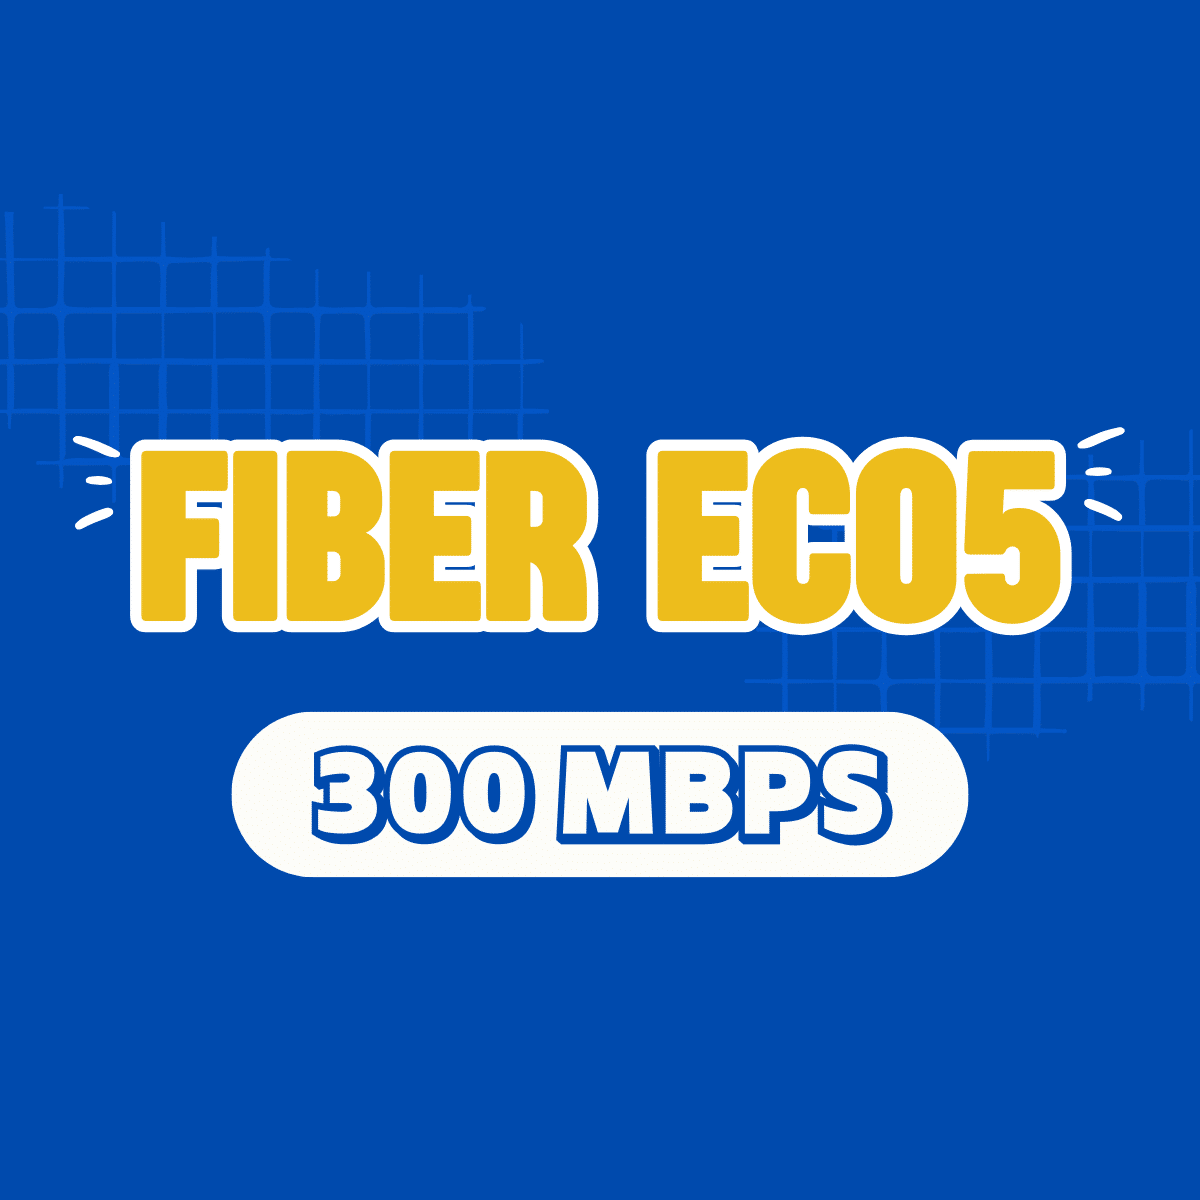 Fiber Eco 5, fibereco5